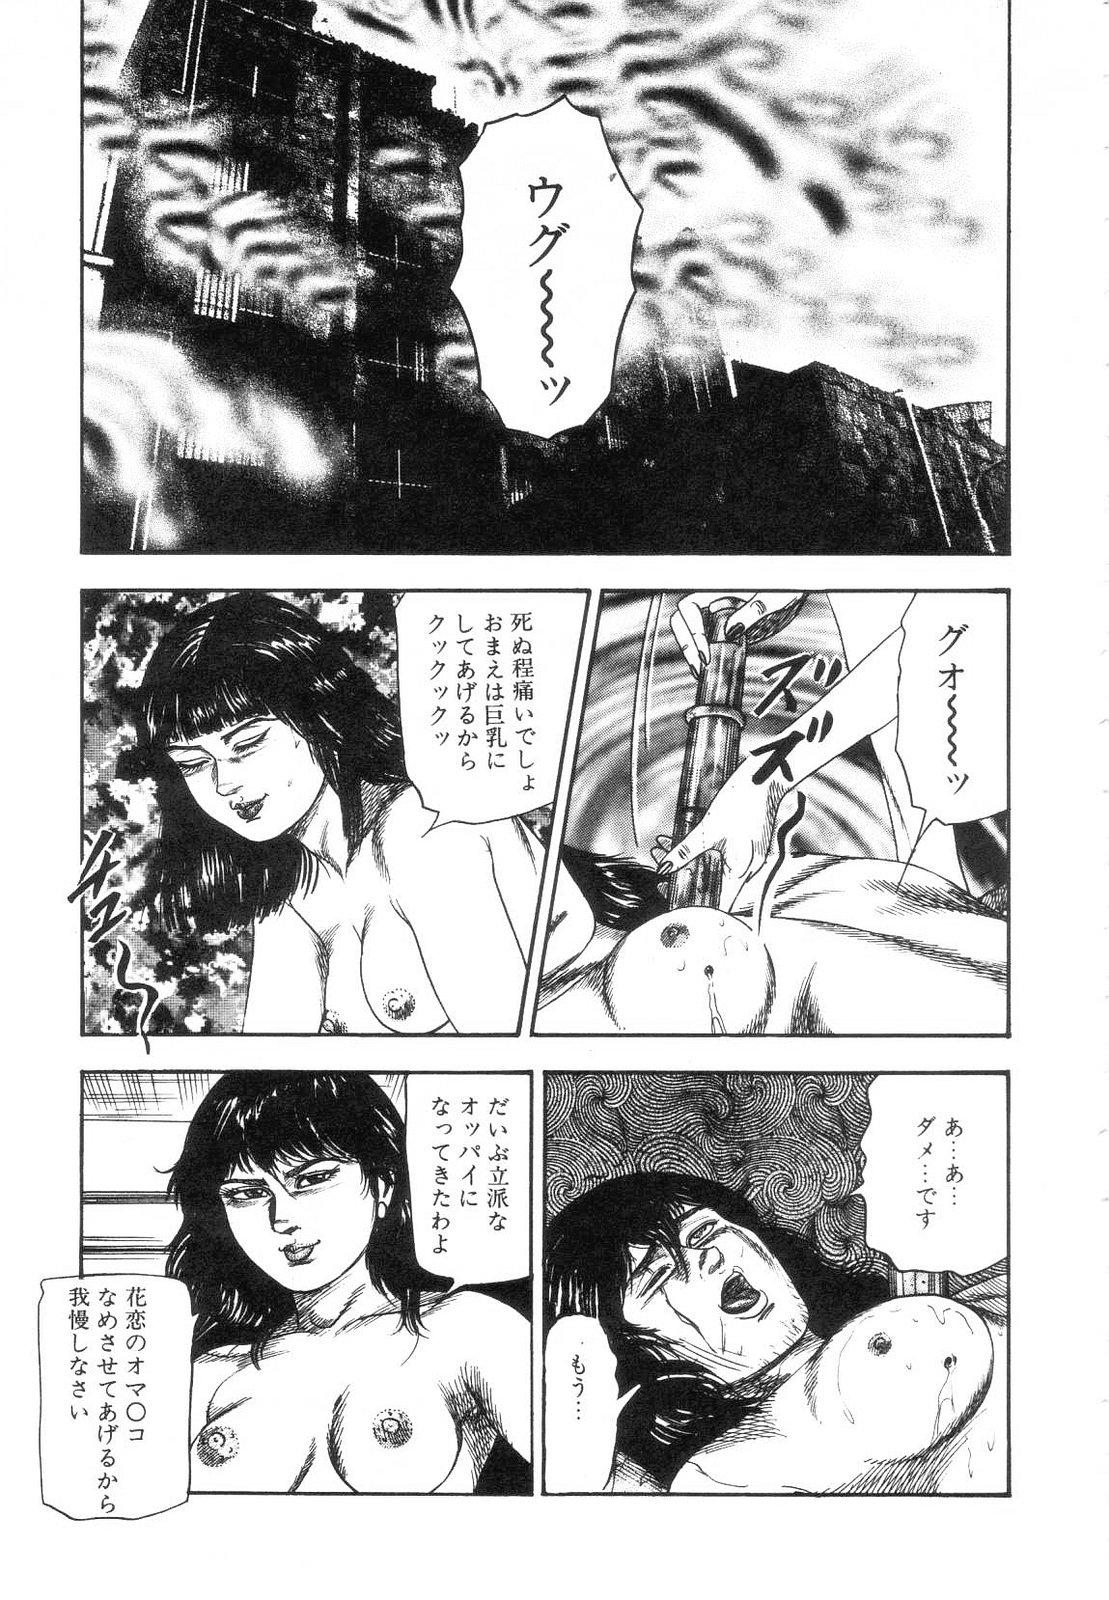 Shiro no Mokushiroku Vol. 7 - Shiiku Ningyou Erika no Shou 184